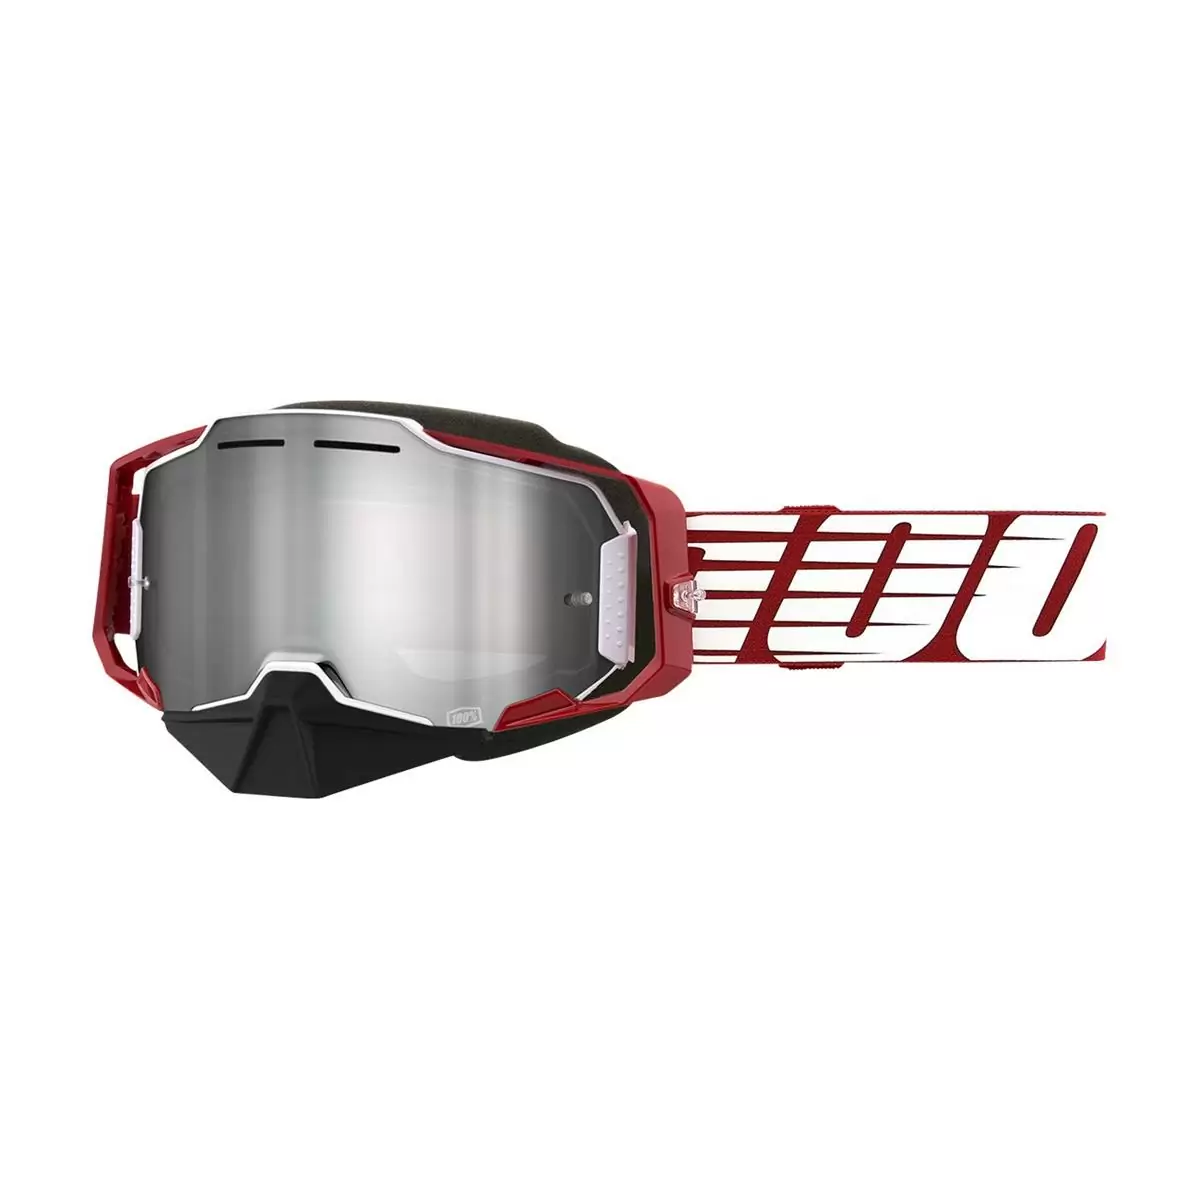 Armega Gafas de Nieve Espejo Rojo Lente Plata Flash - image